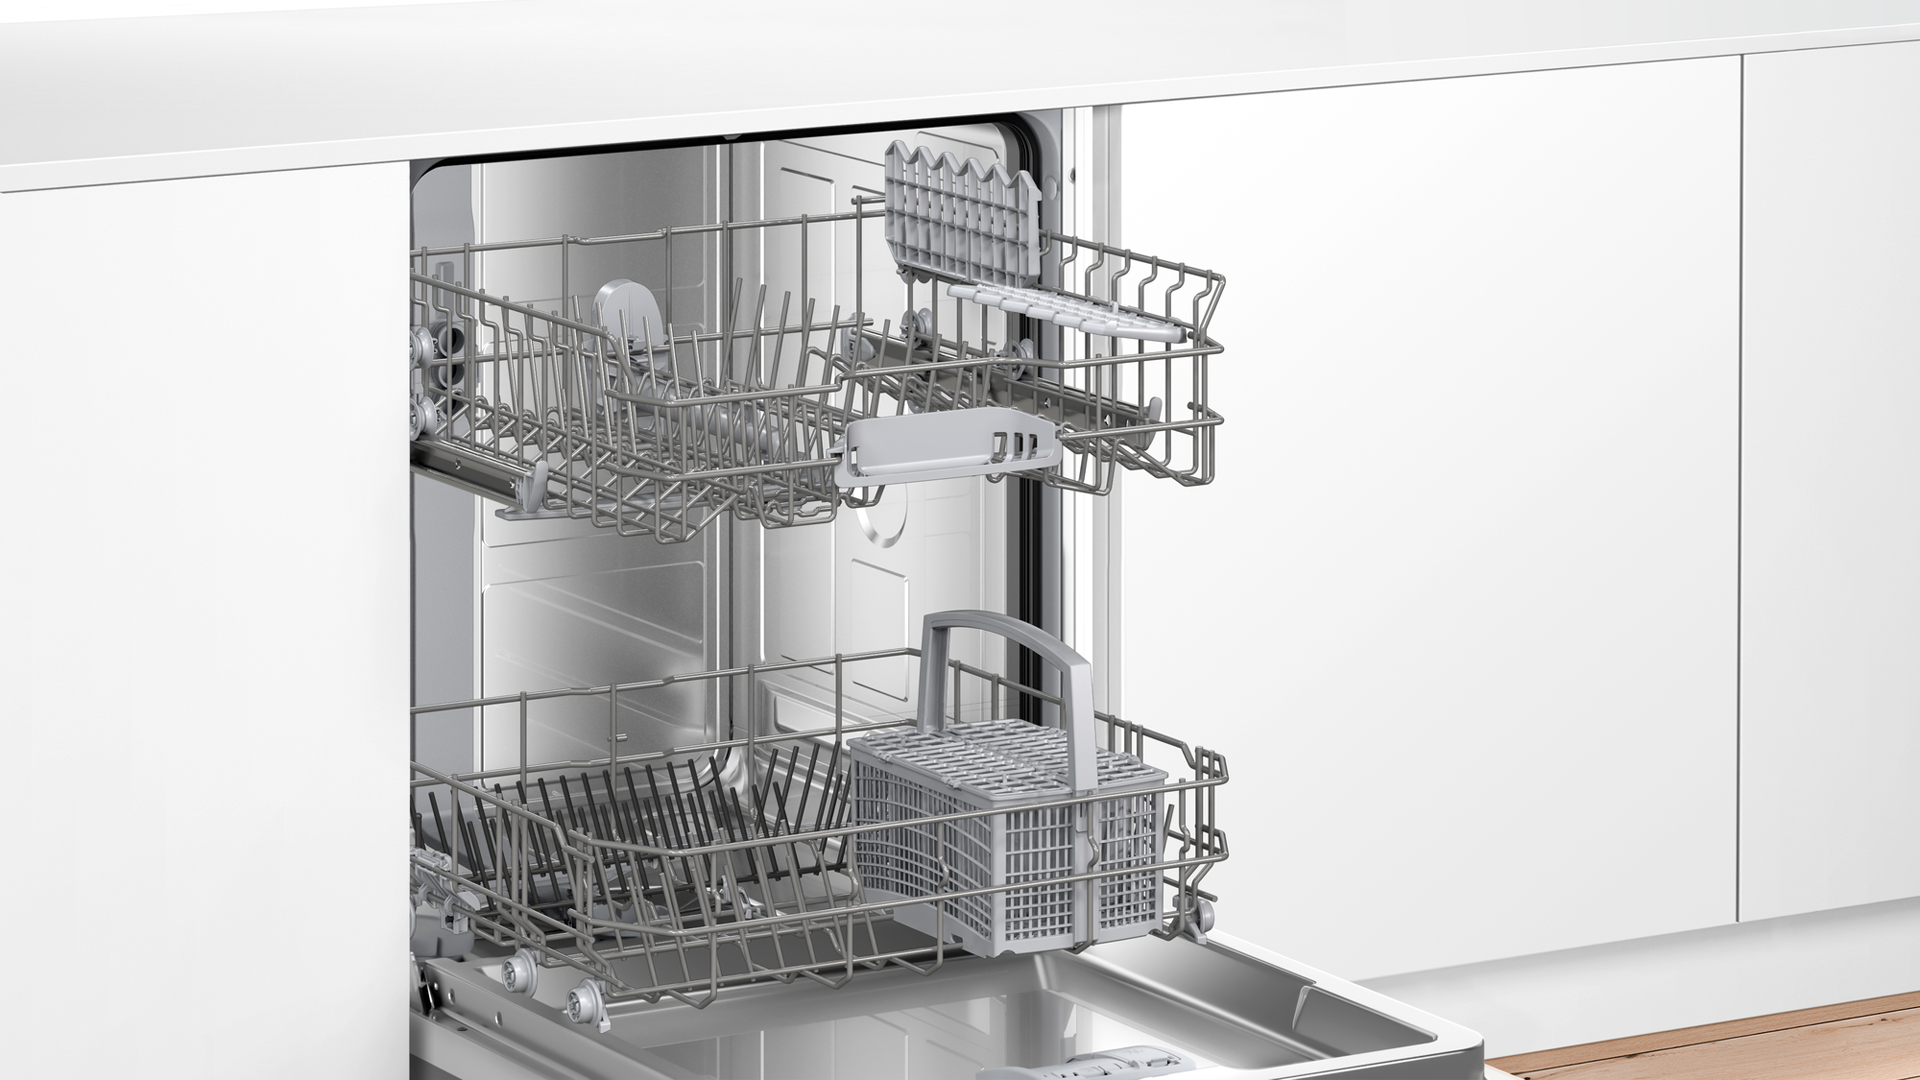 Ремонт посудомоечной машины bosch (бош) | портал о компьютерах и бытовой технике